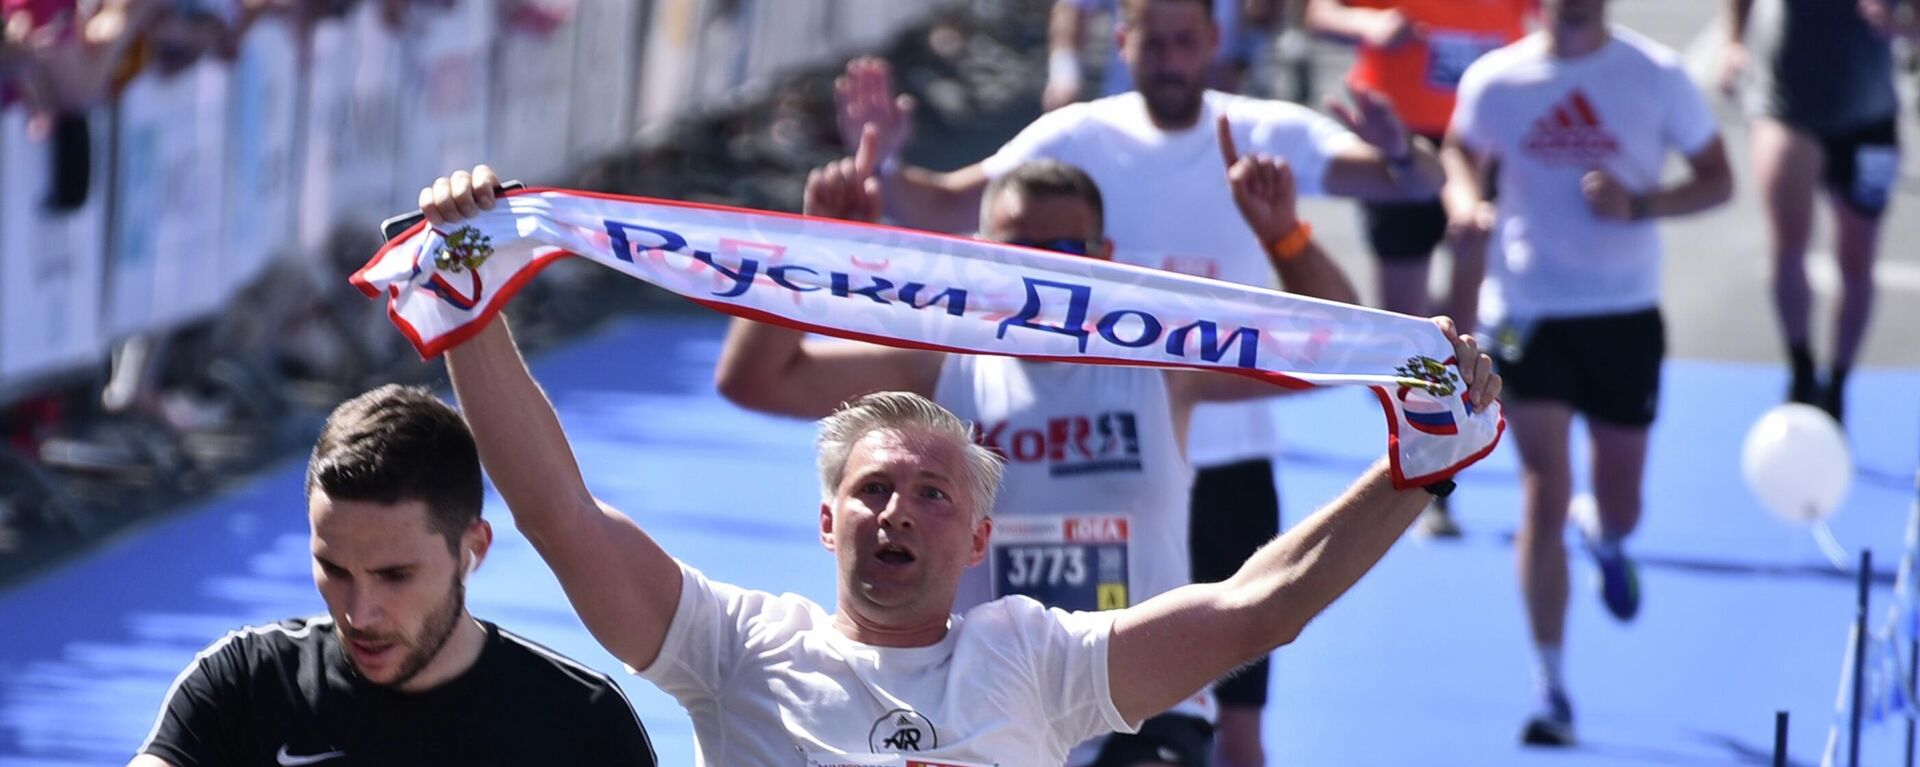 Maraton ruski dom - Sputnik Srbija, 1920, 15.05.2022